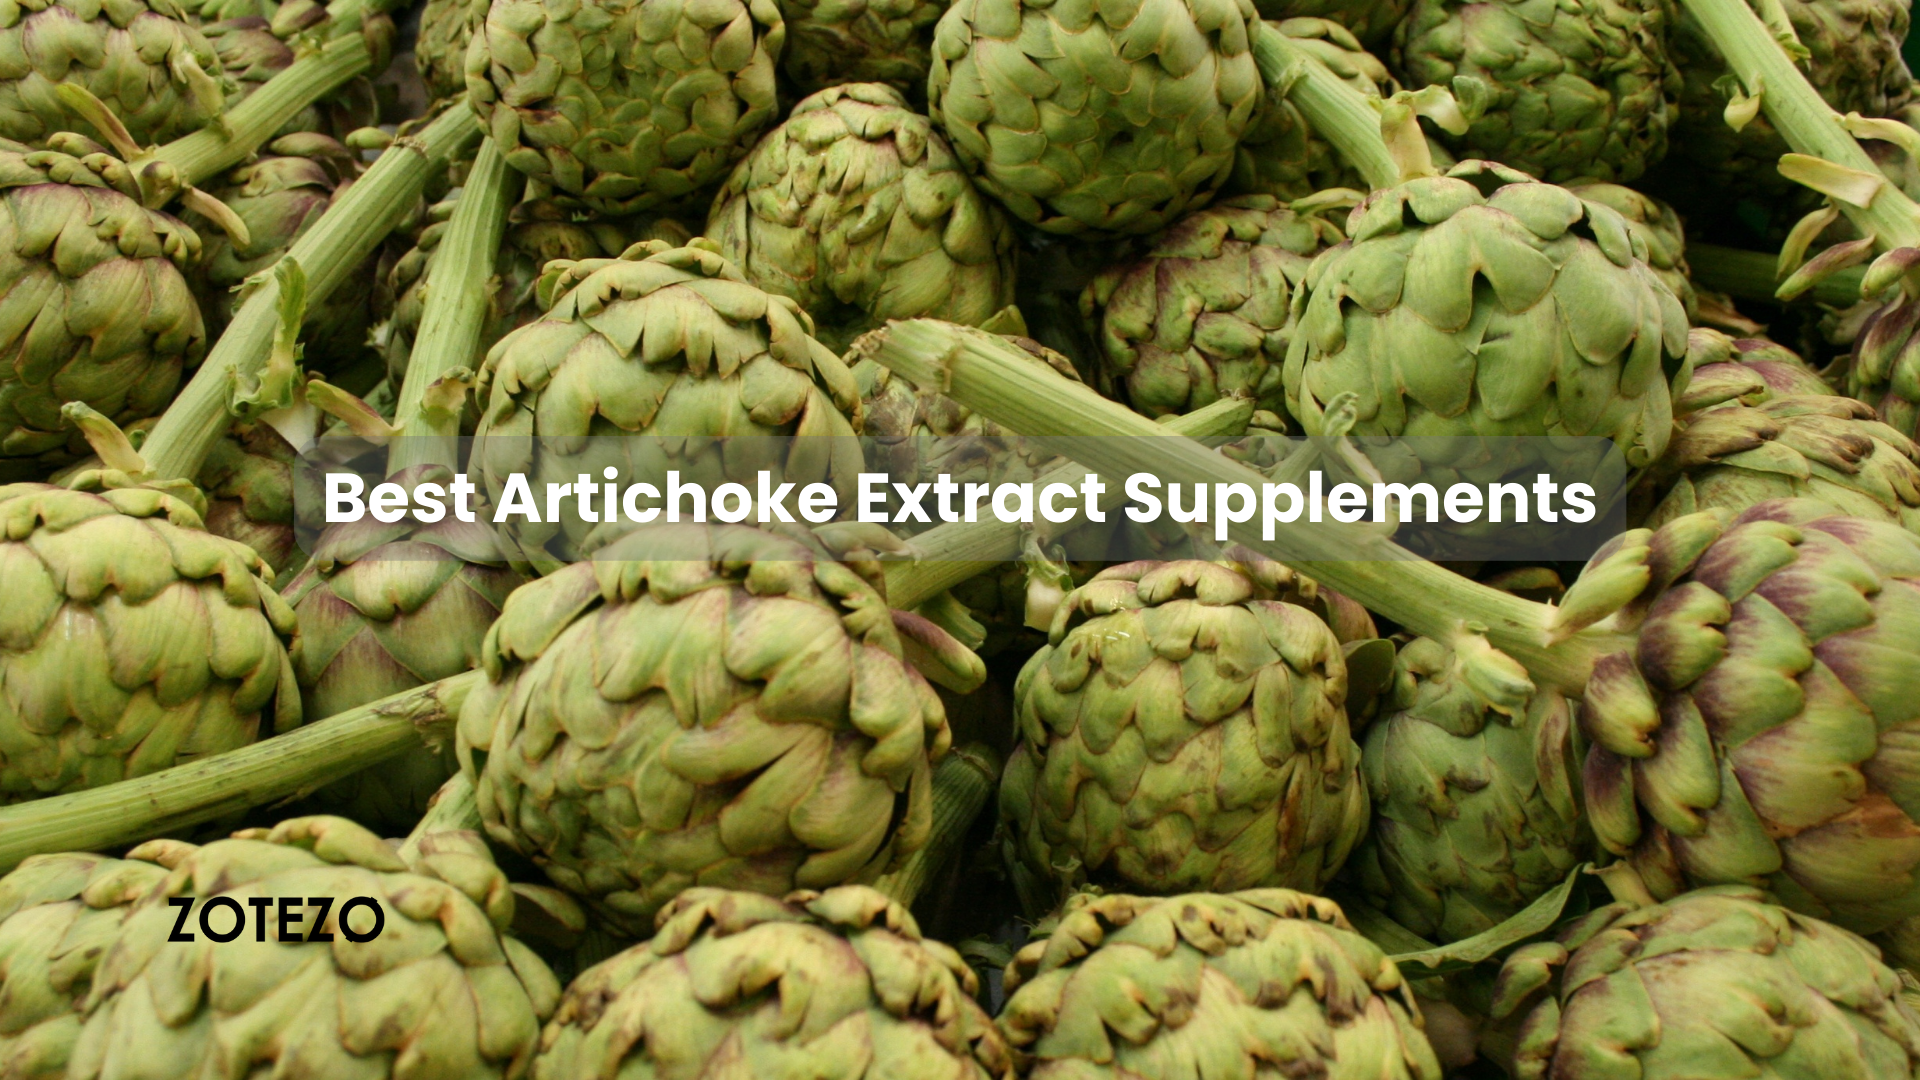 Artichoke Extract Supplements in Sweden